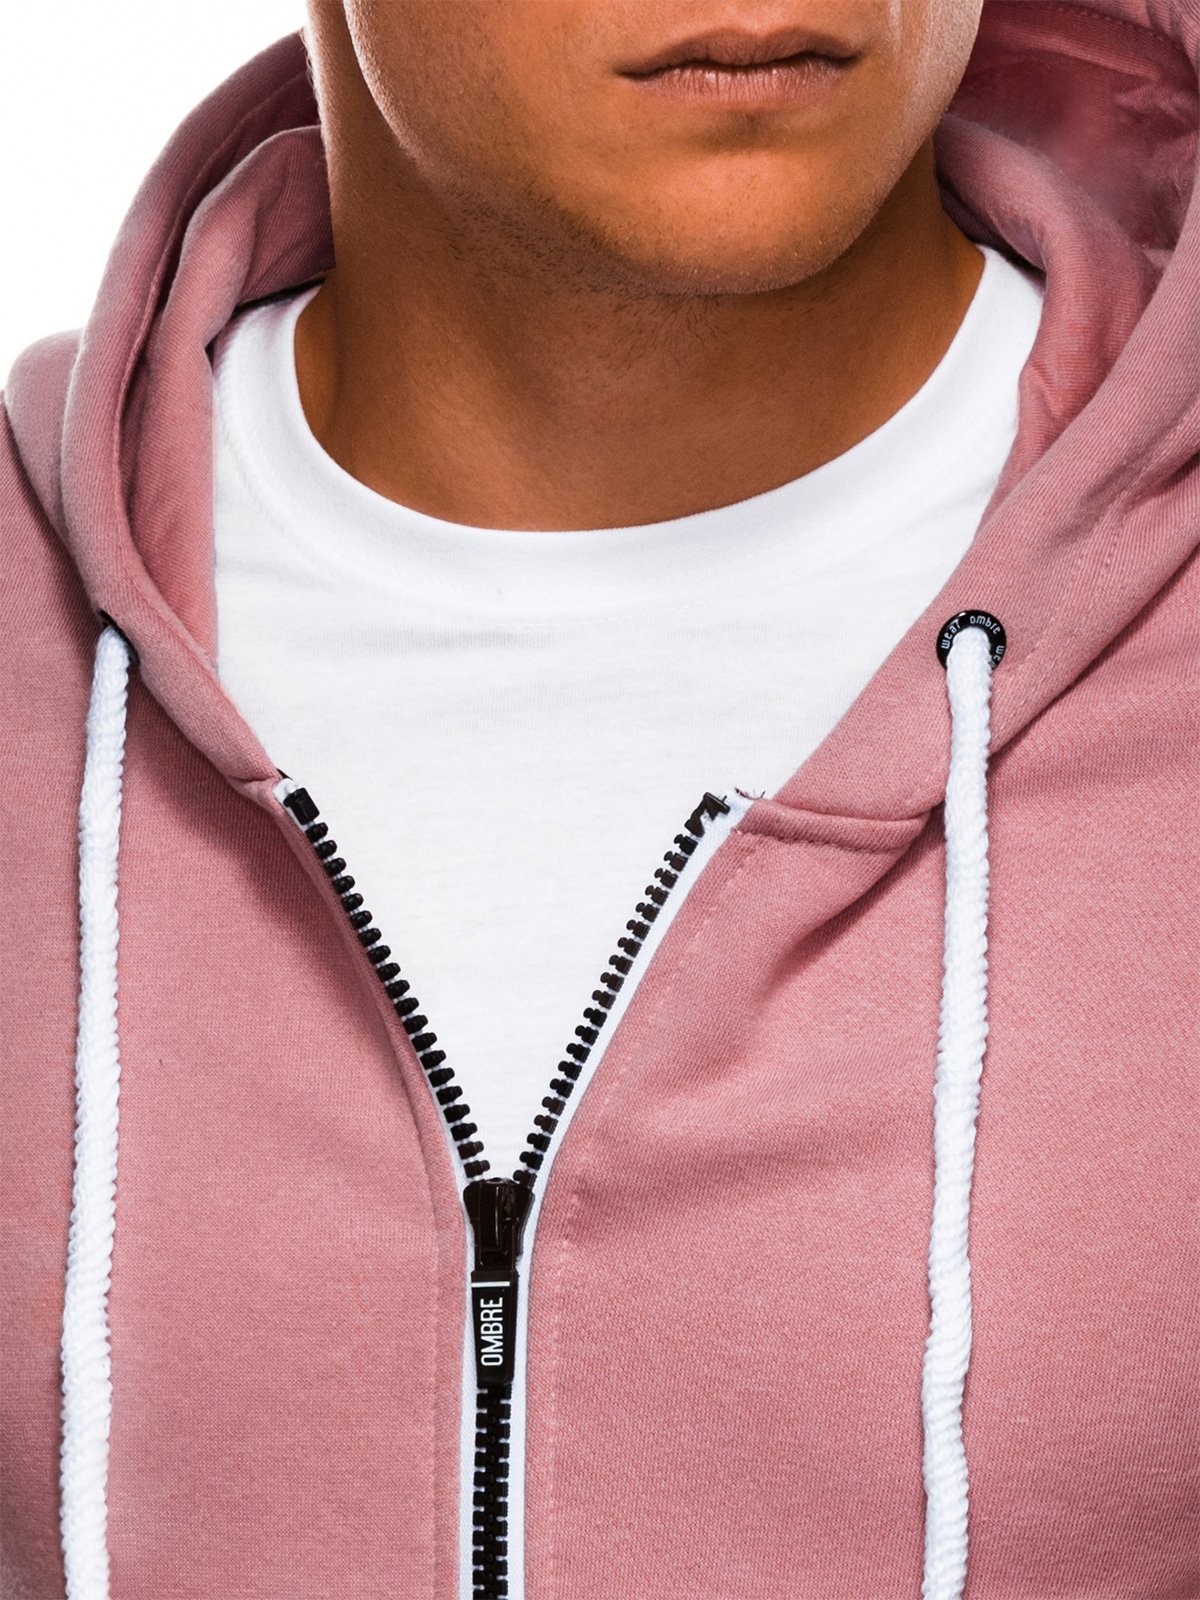 pink zip up hoodie mens